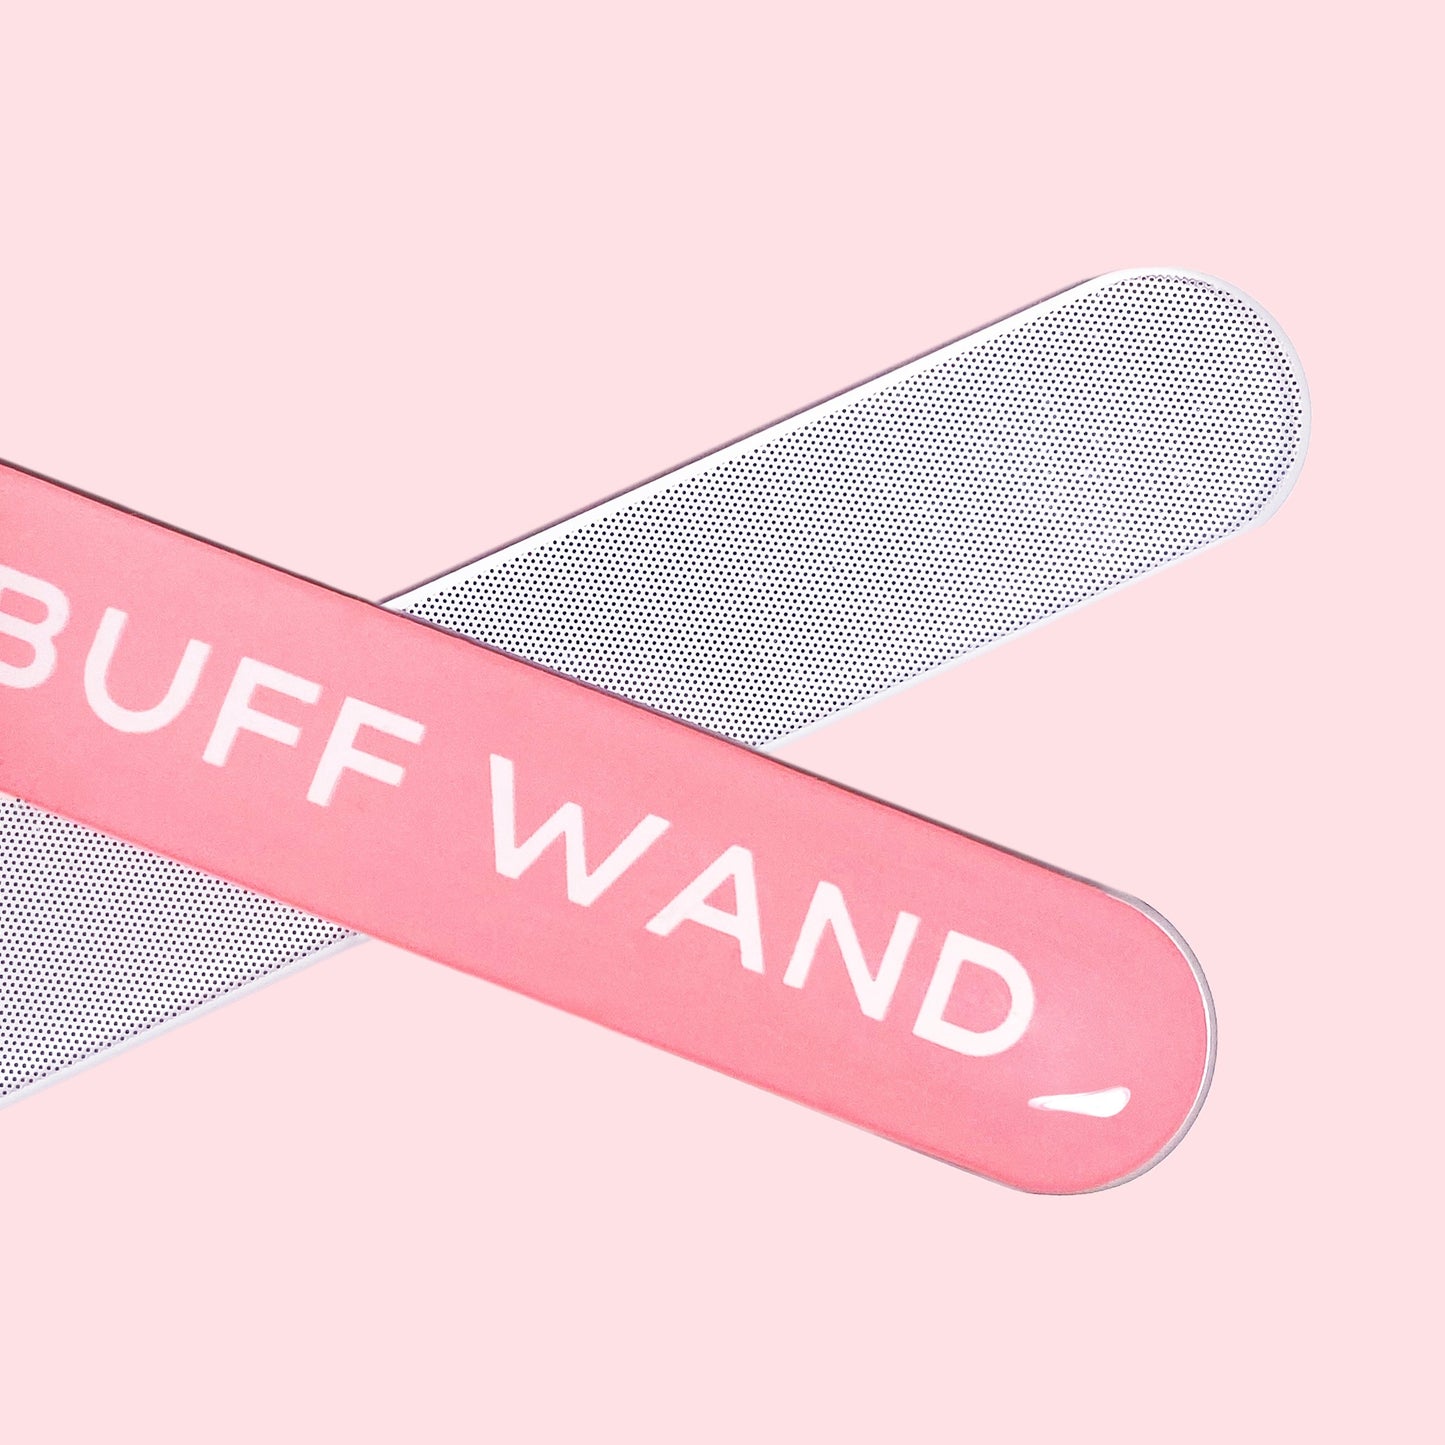 Buff Wand - Nano Glass Nail File Manicure Wand (Single Pack)